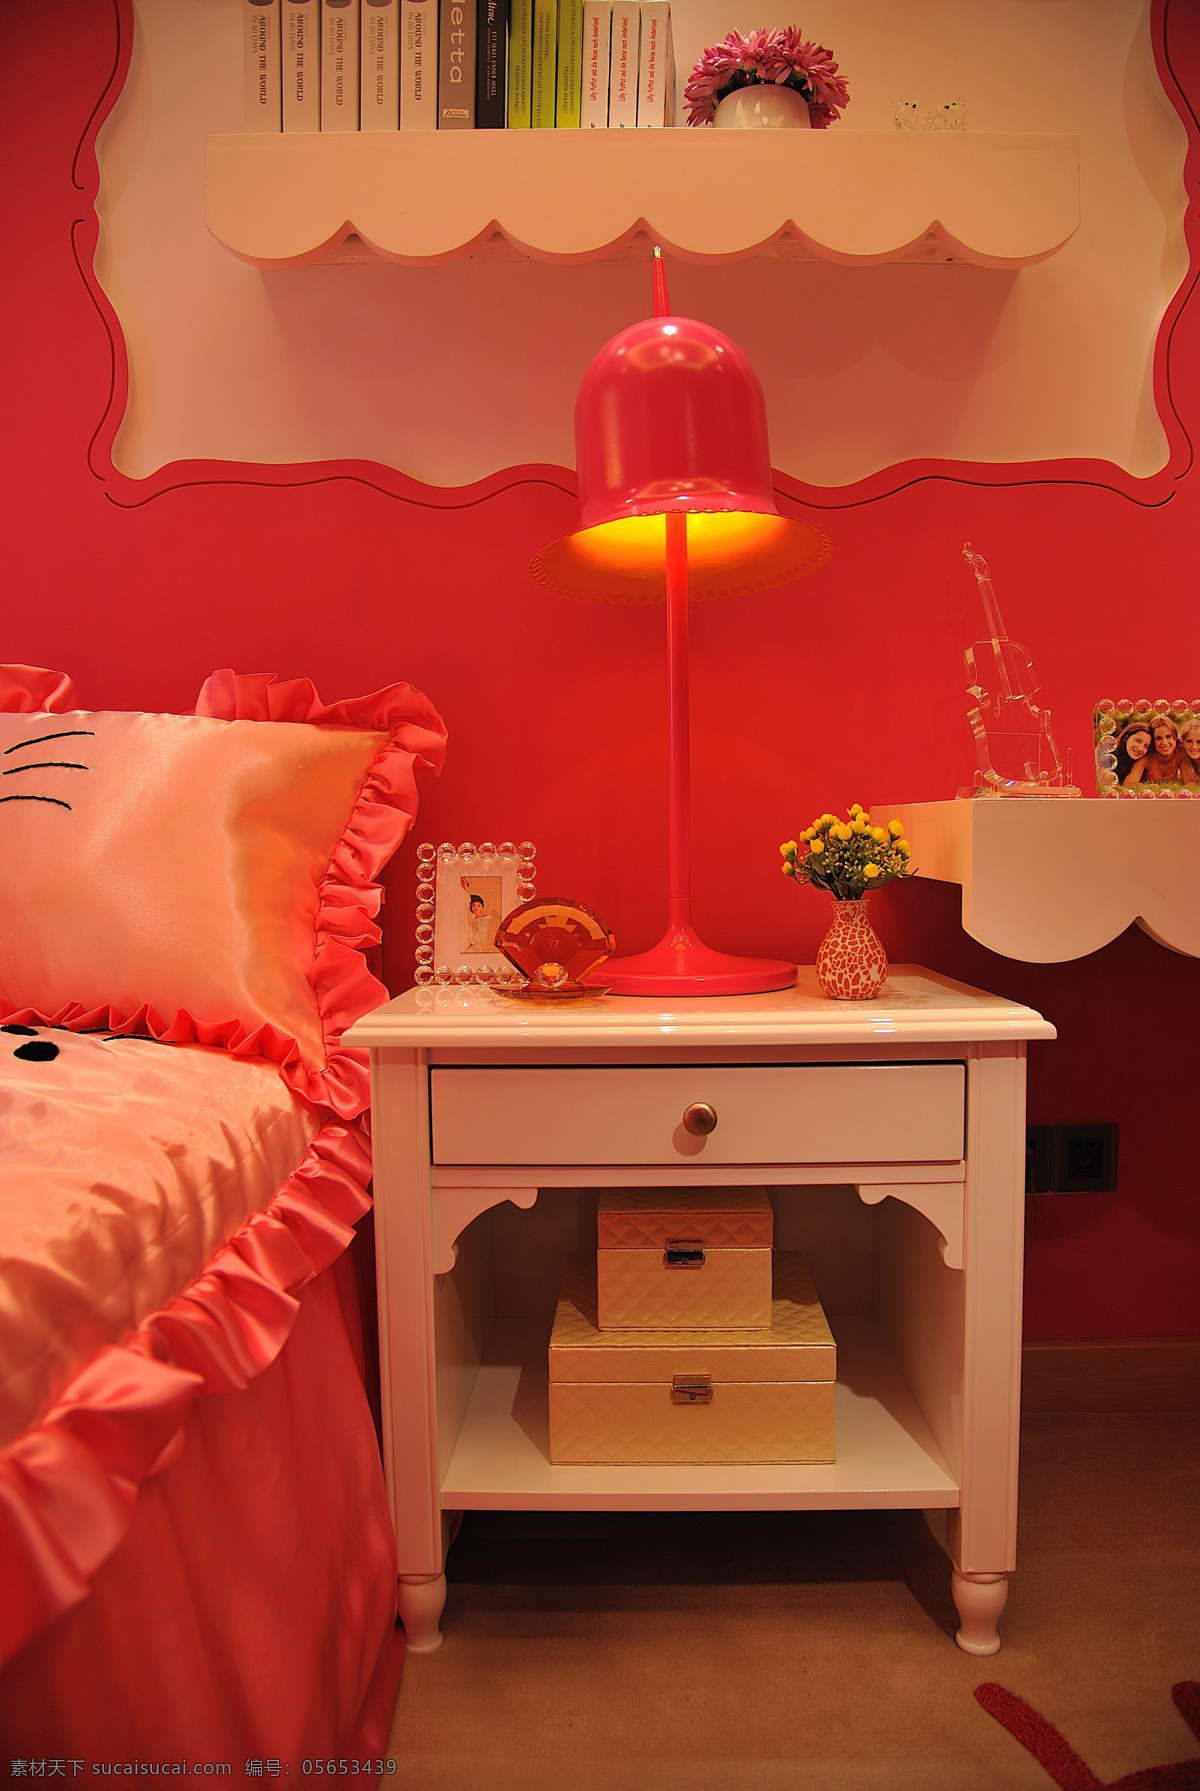 红色 卧室 床头柜 床头灯 设计图 家居 家居生活 室内设计 装修 室内 家具 装修设计 环境设计